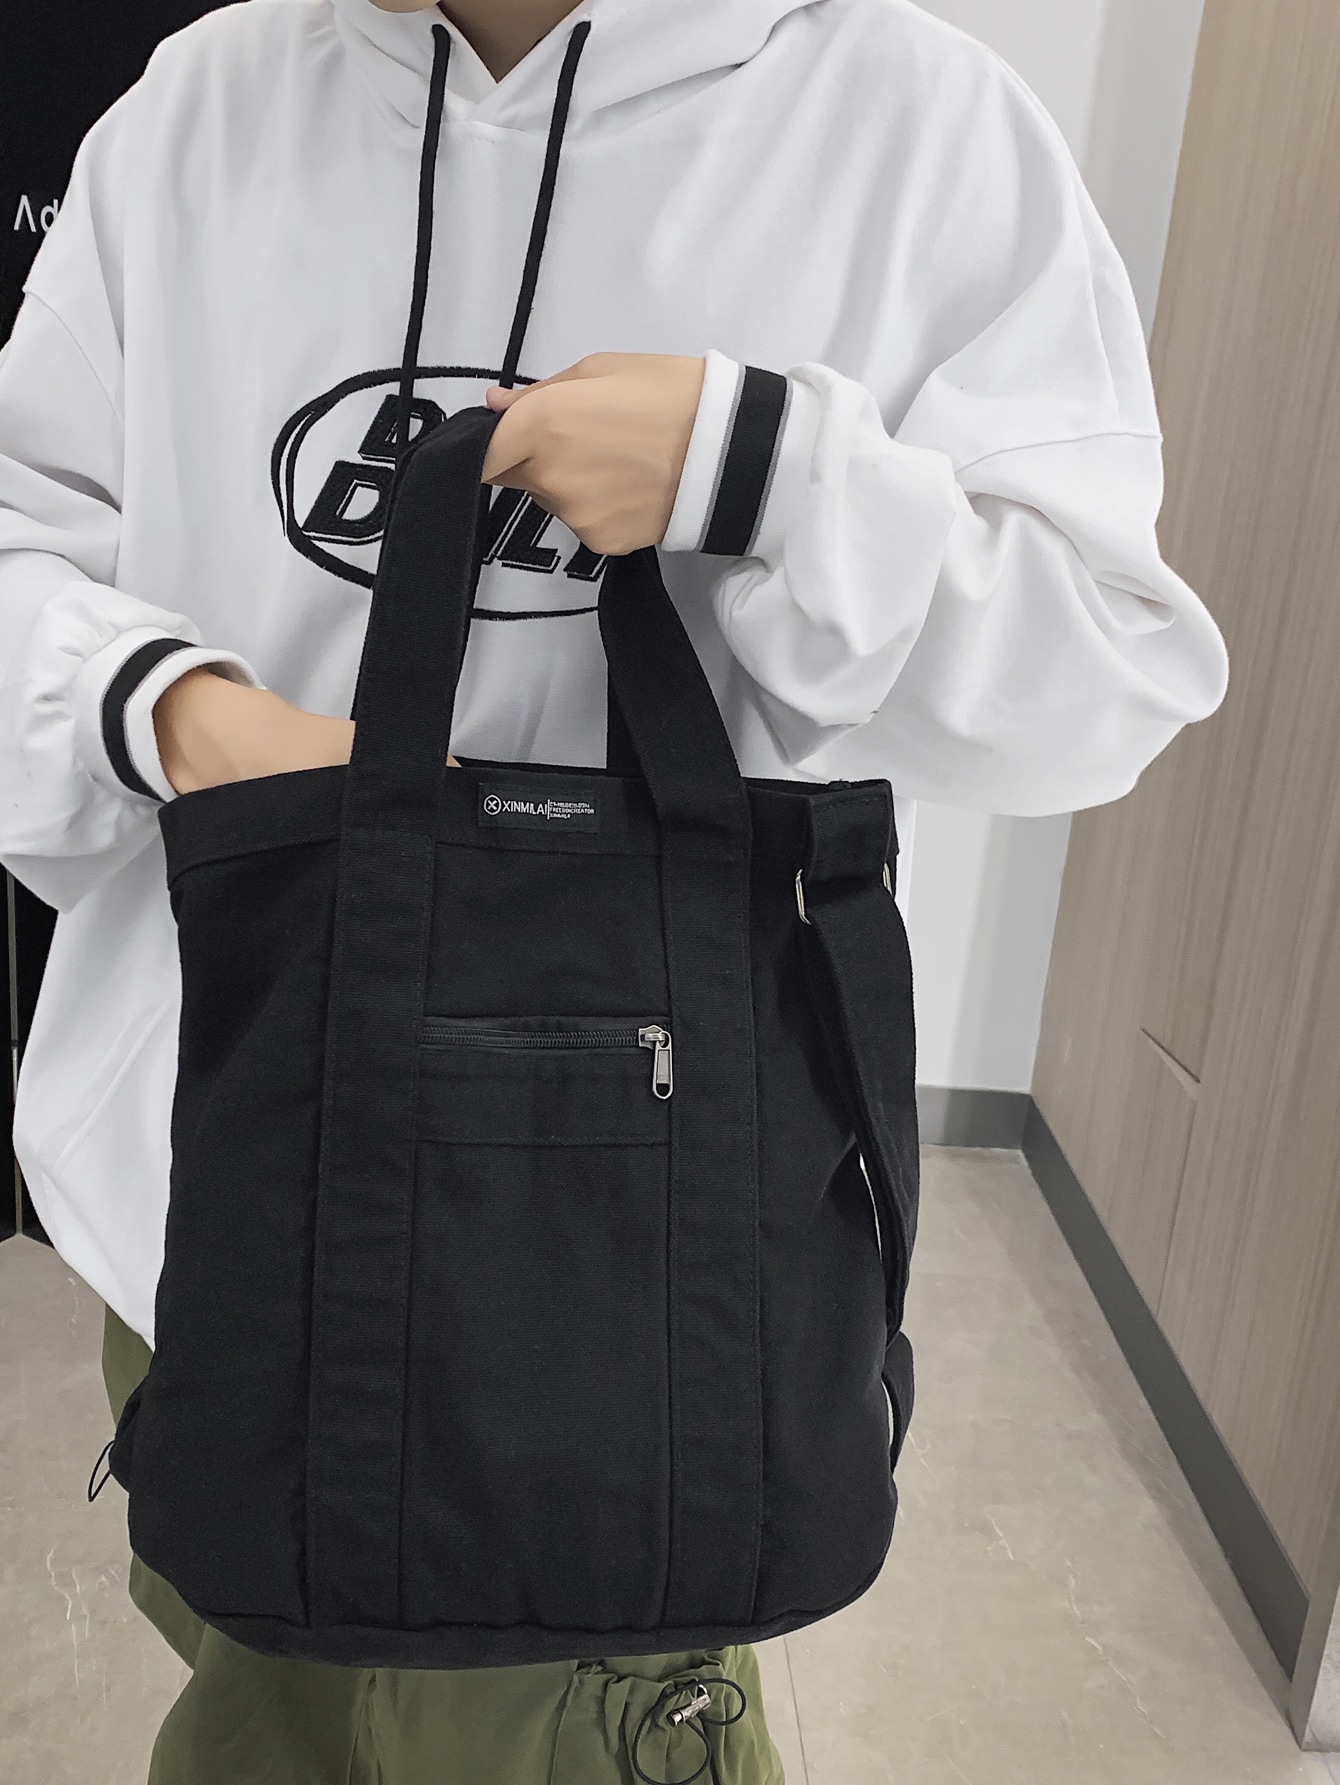 Мужская сумка-шоппер с буквенным рисунком Пляжная сумка Сумка для покупок Многоразовая сумка Спортивная сумка, черный сумка пляжная marc